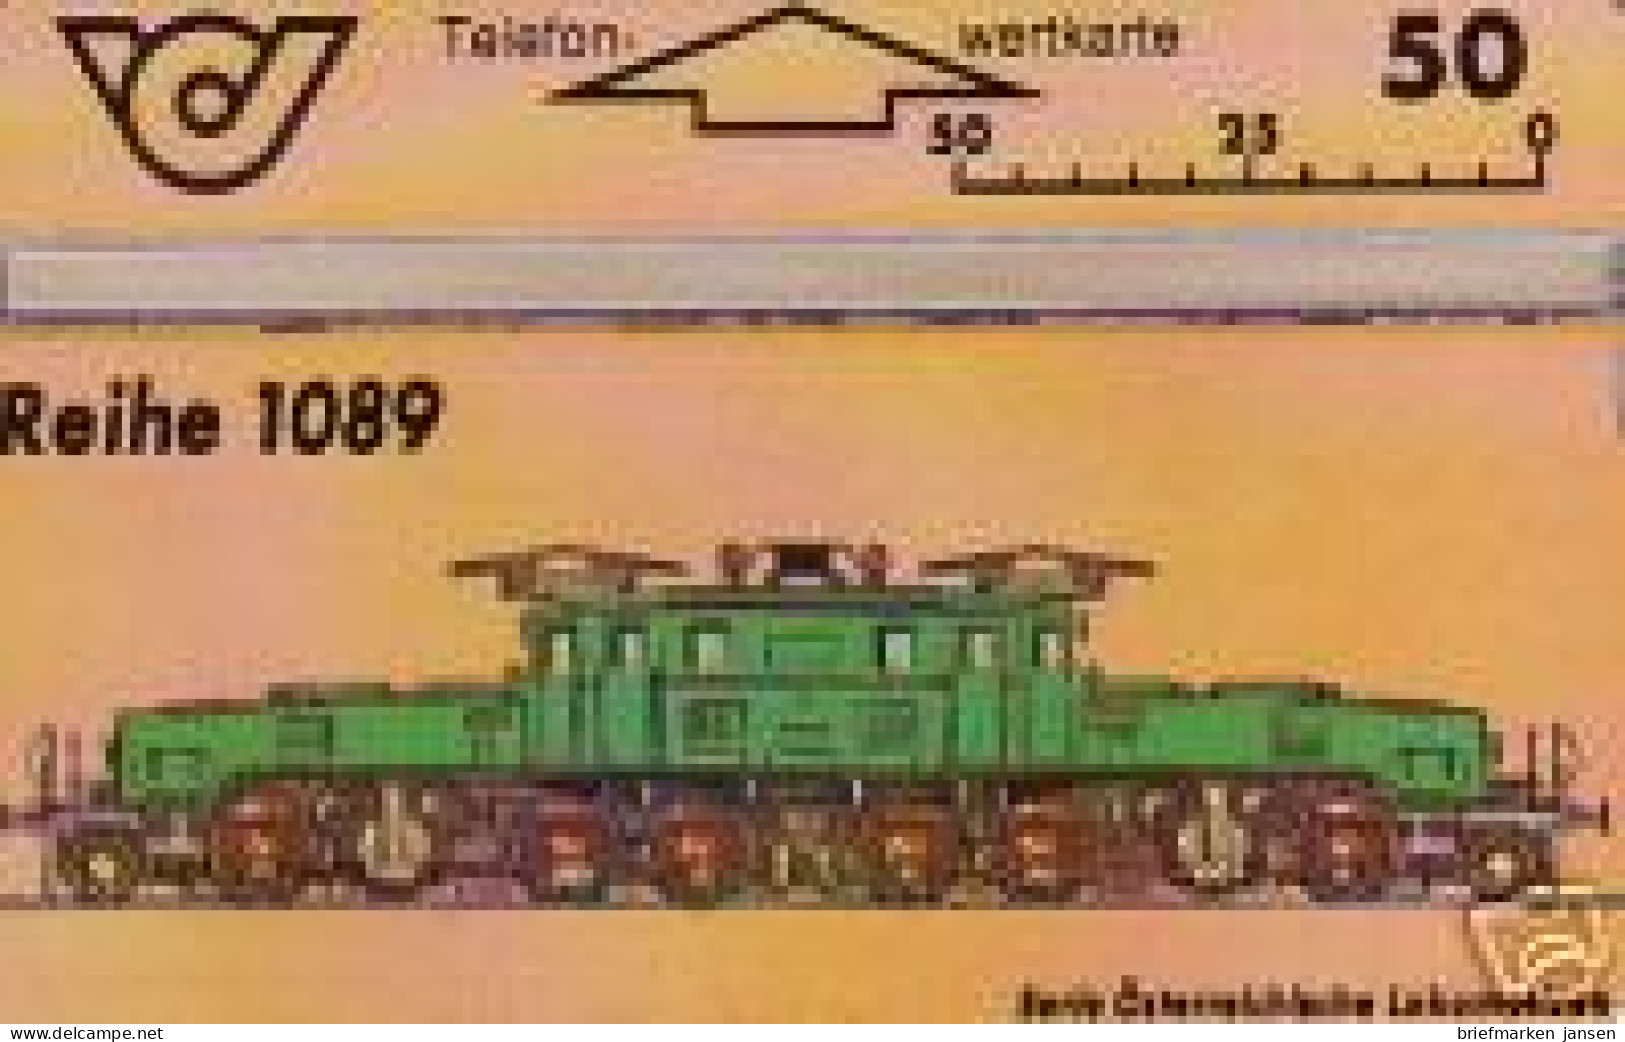 Telefonkarte Österreich, Lokomotiven, Krokodil, Reihe 1089, 50 - Ohne Zuordnung